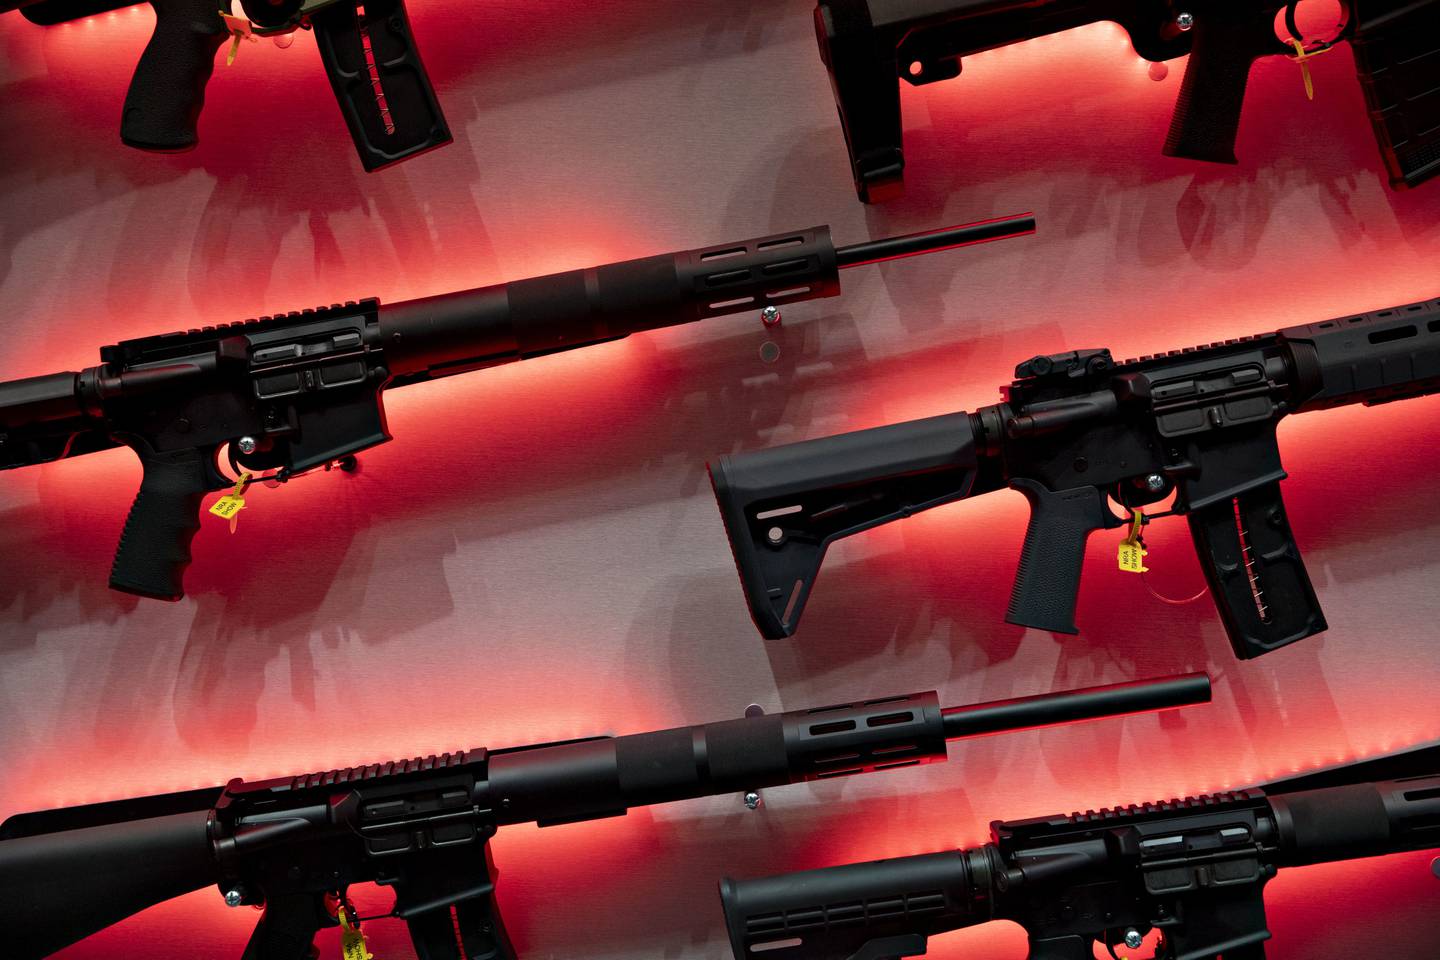 Los demócratas en la Cámara de Representantes han propuesto un paquete de leyes sobre armas que elevaría la edad mínima para comprar algunos rifles semiautomáticos de 18 a 21 años.